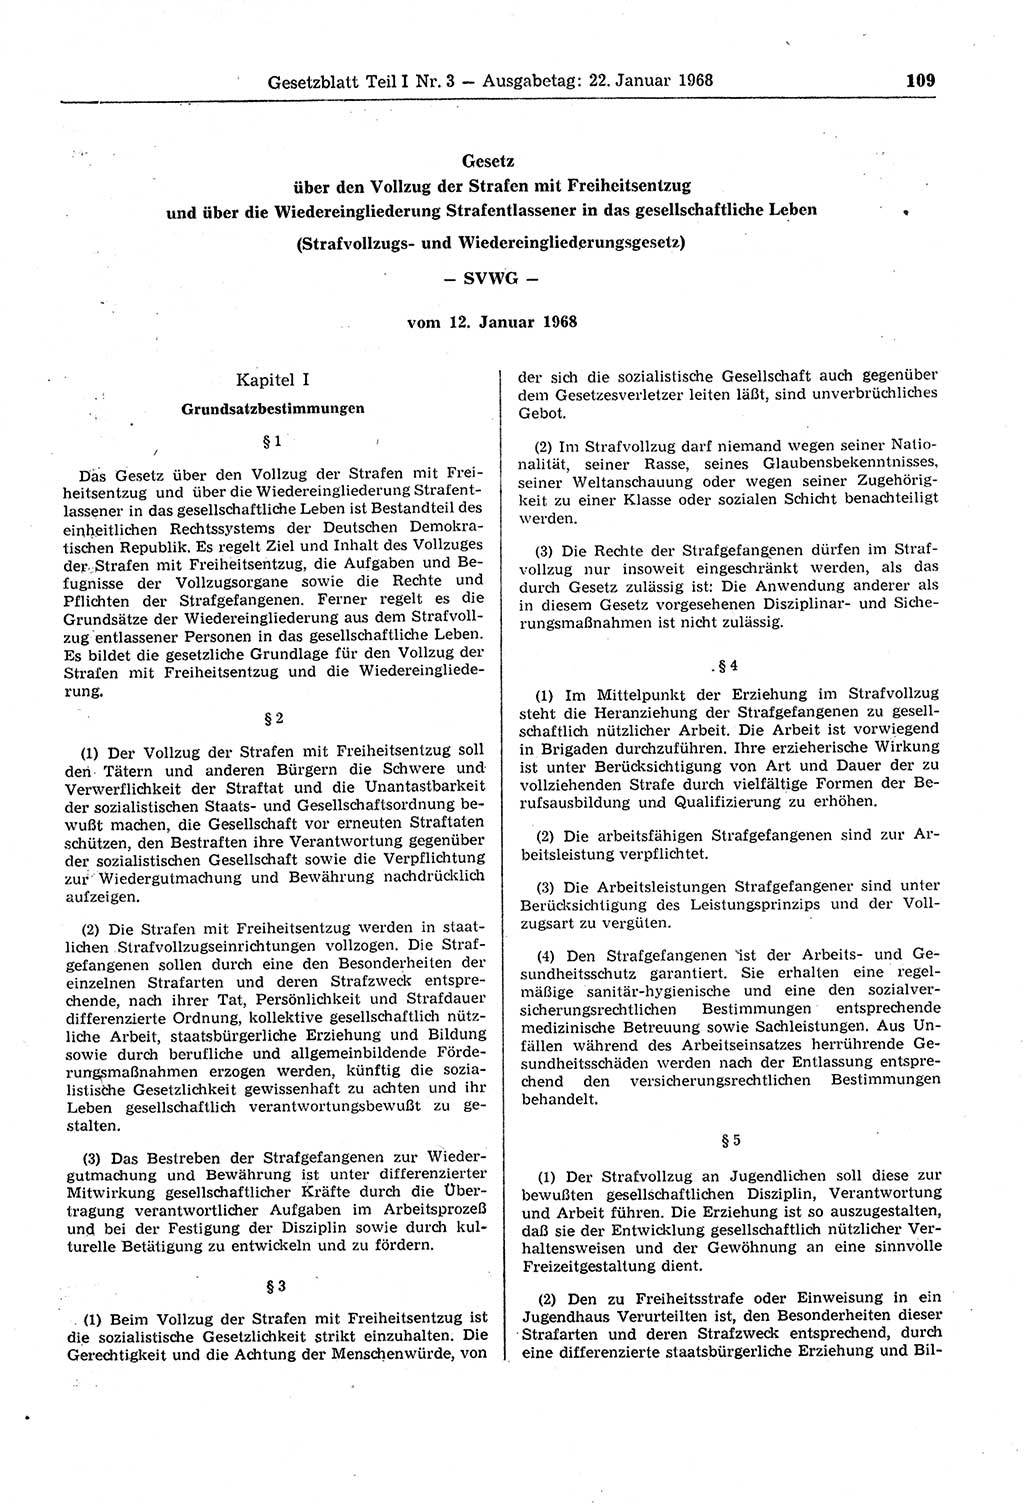 Gesetzblatt (GBl.) der Deutschen Demokratischen Republik (DDR) Teil Ⅰ 1968, Seite 109 (GBl. DDR Ⅰ 1968, S. 109)